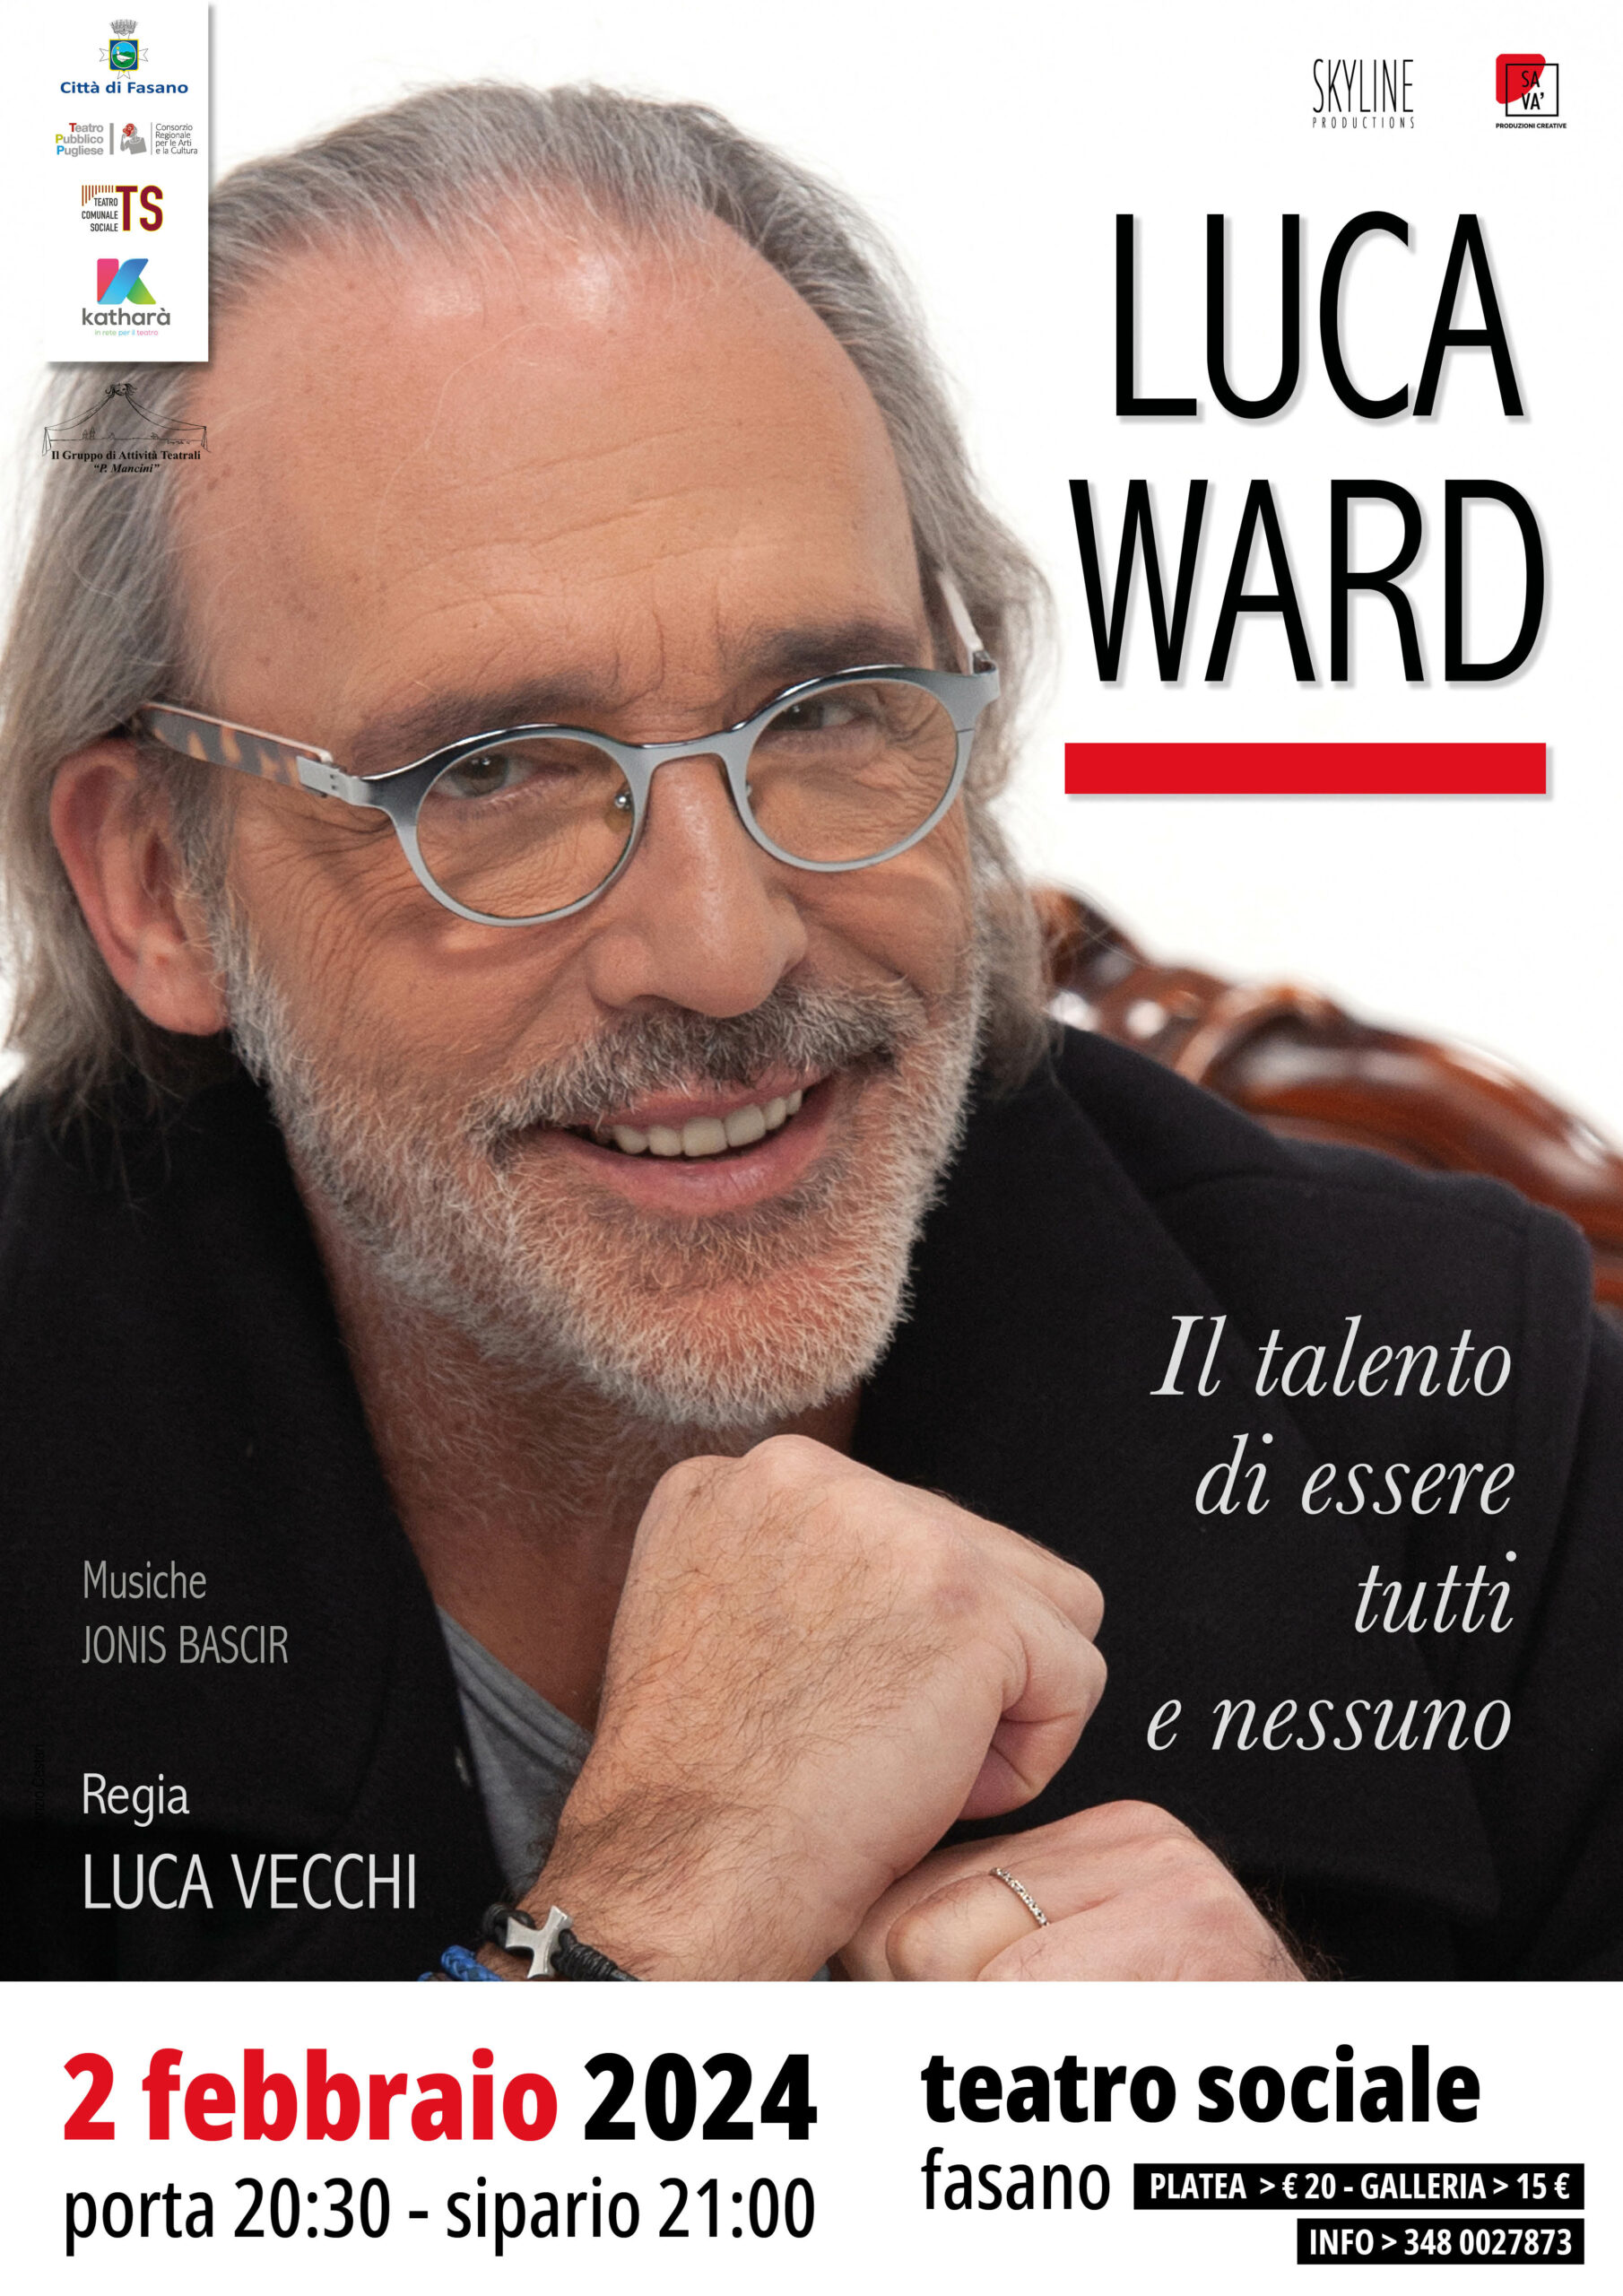 “Il talento di essere tutti e nessuno”, Luca Ward si racconta al Teatro Sociale di Fasano​